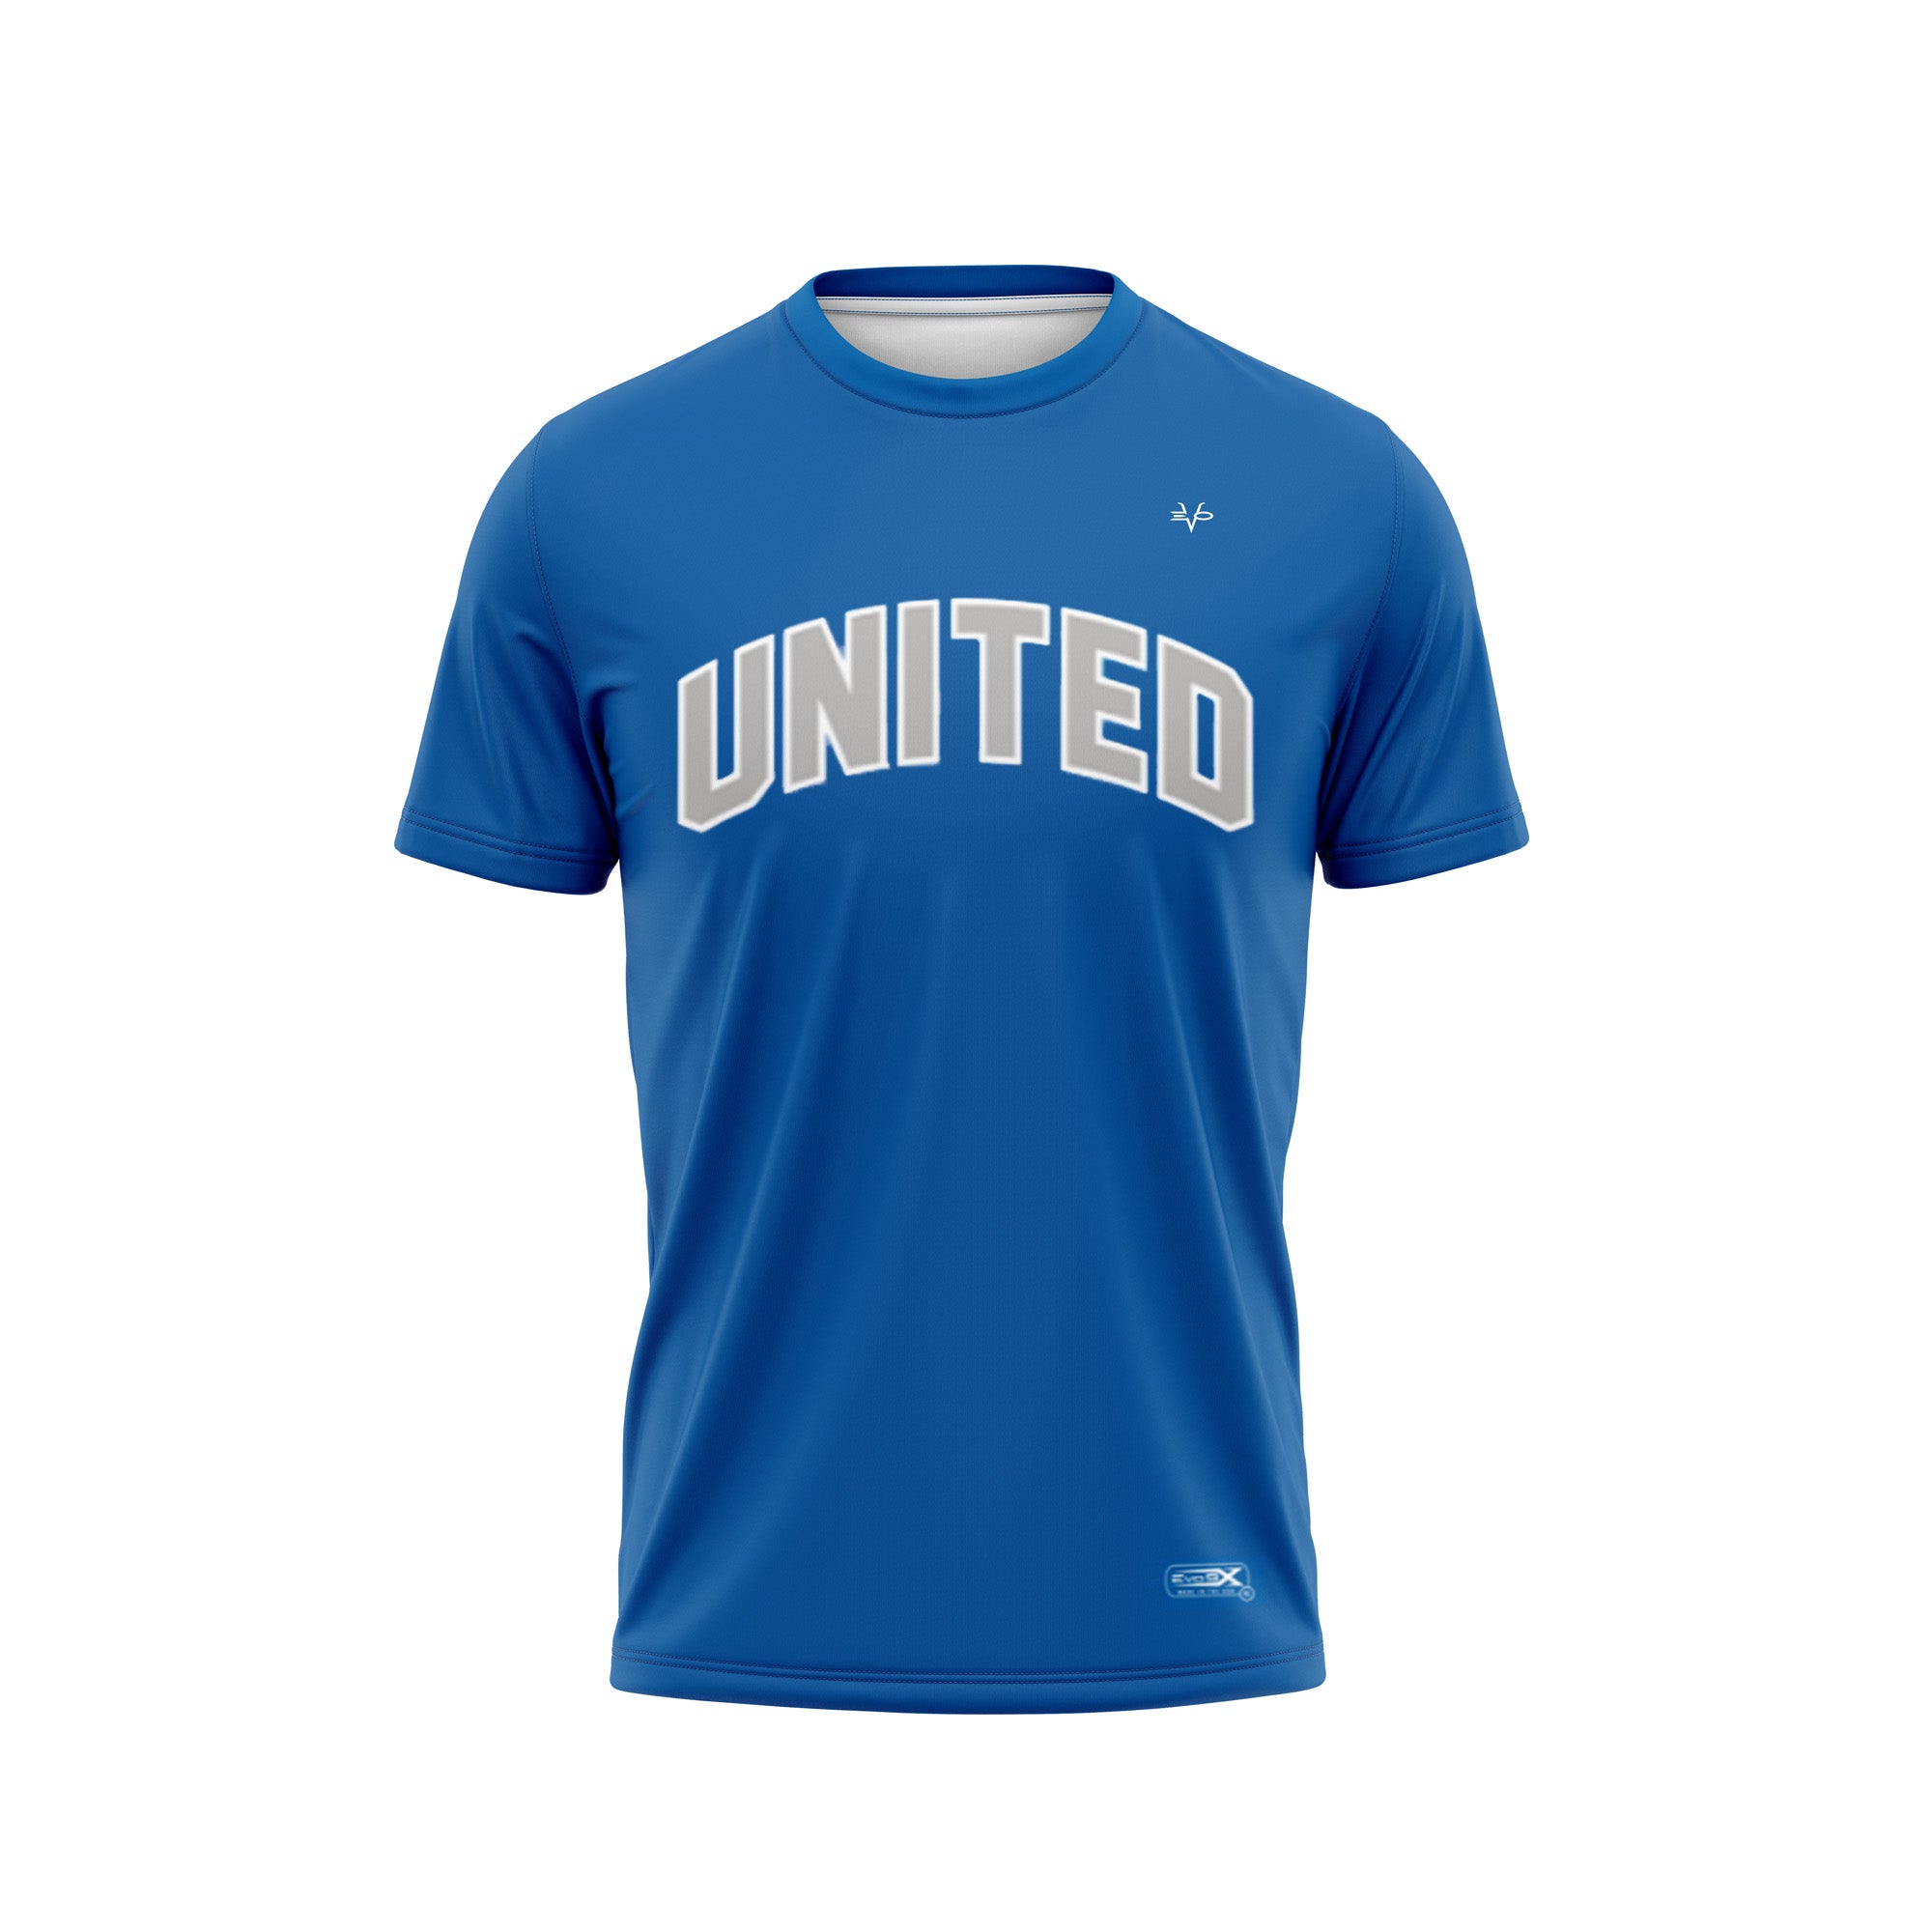 BRICK UNITED BASEBALL Sublimated Jersey - Blue